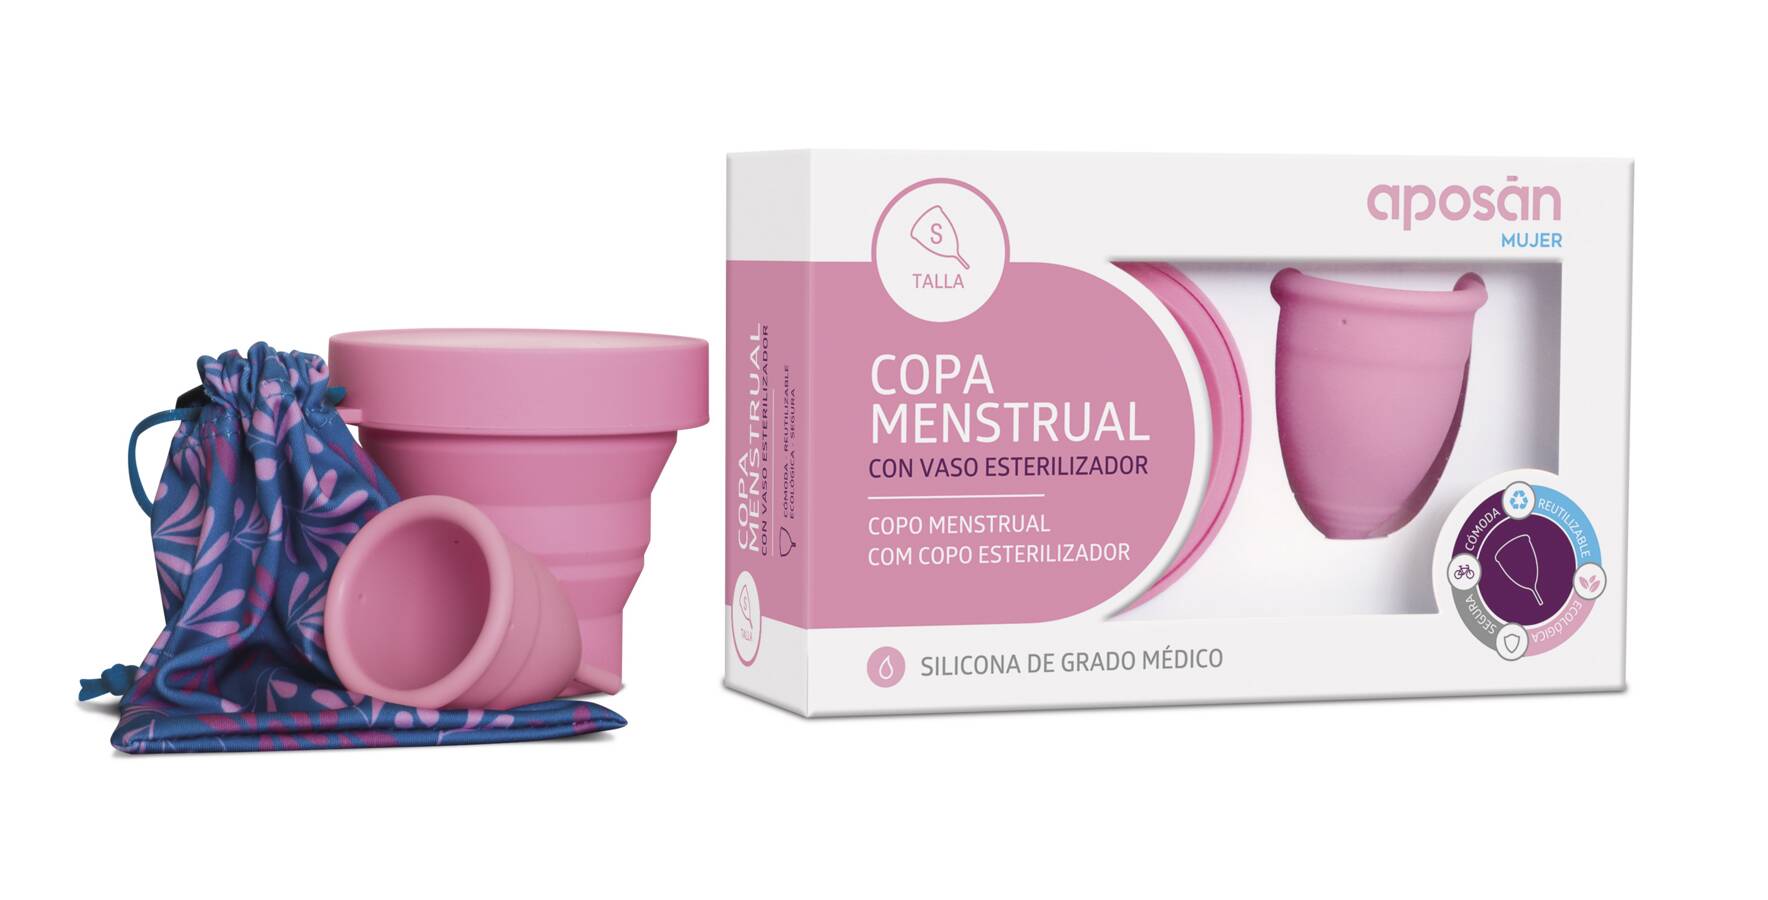 Vaso esterilizador Copa Menstrual Intima